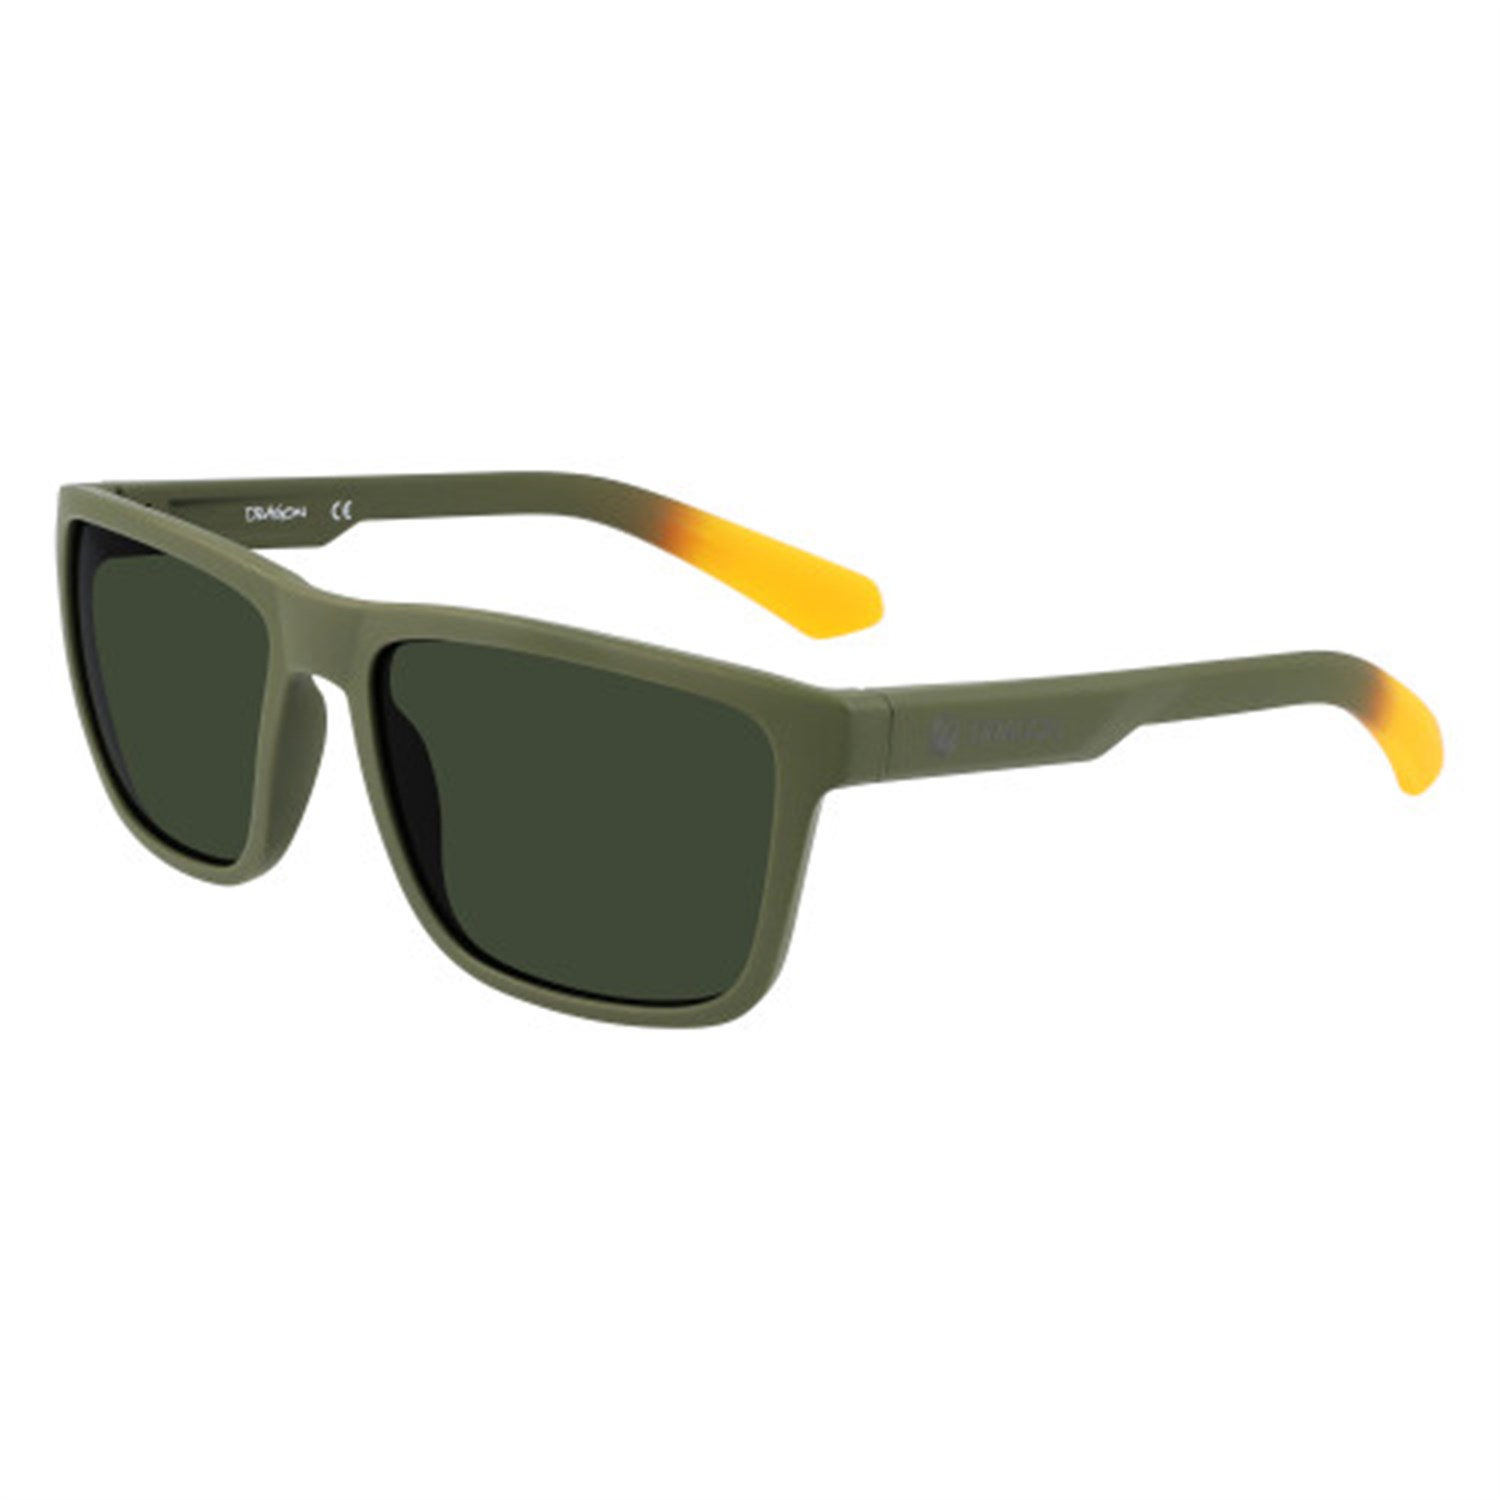 цена Солнцезащитные очки Dragon Reed XL, оливковый